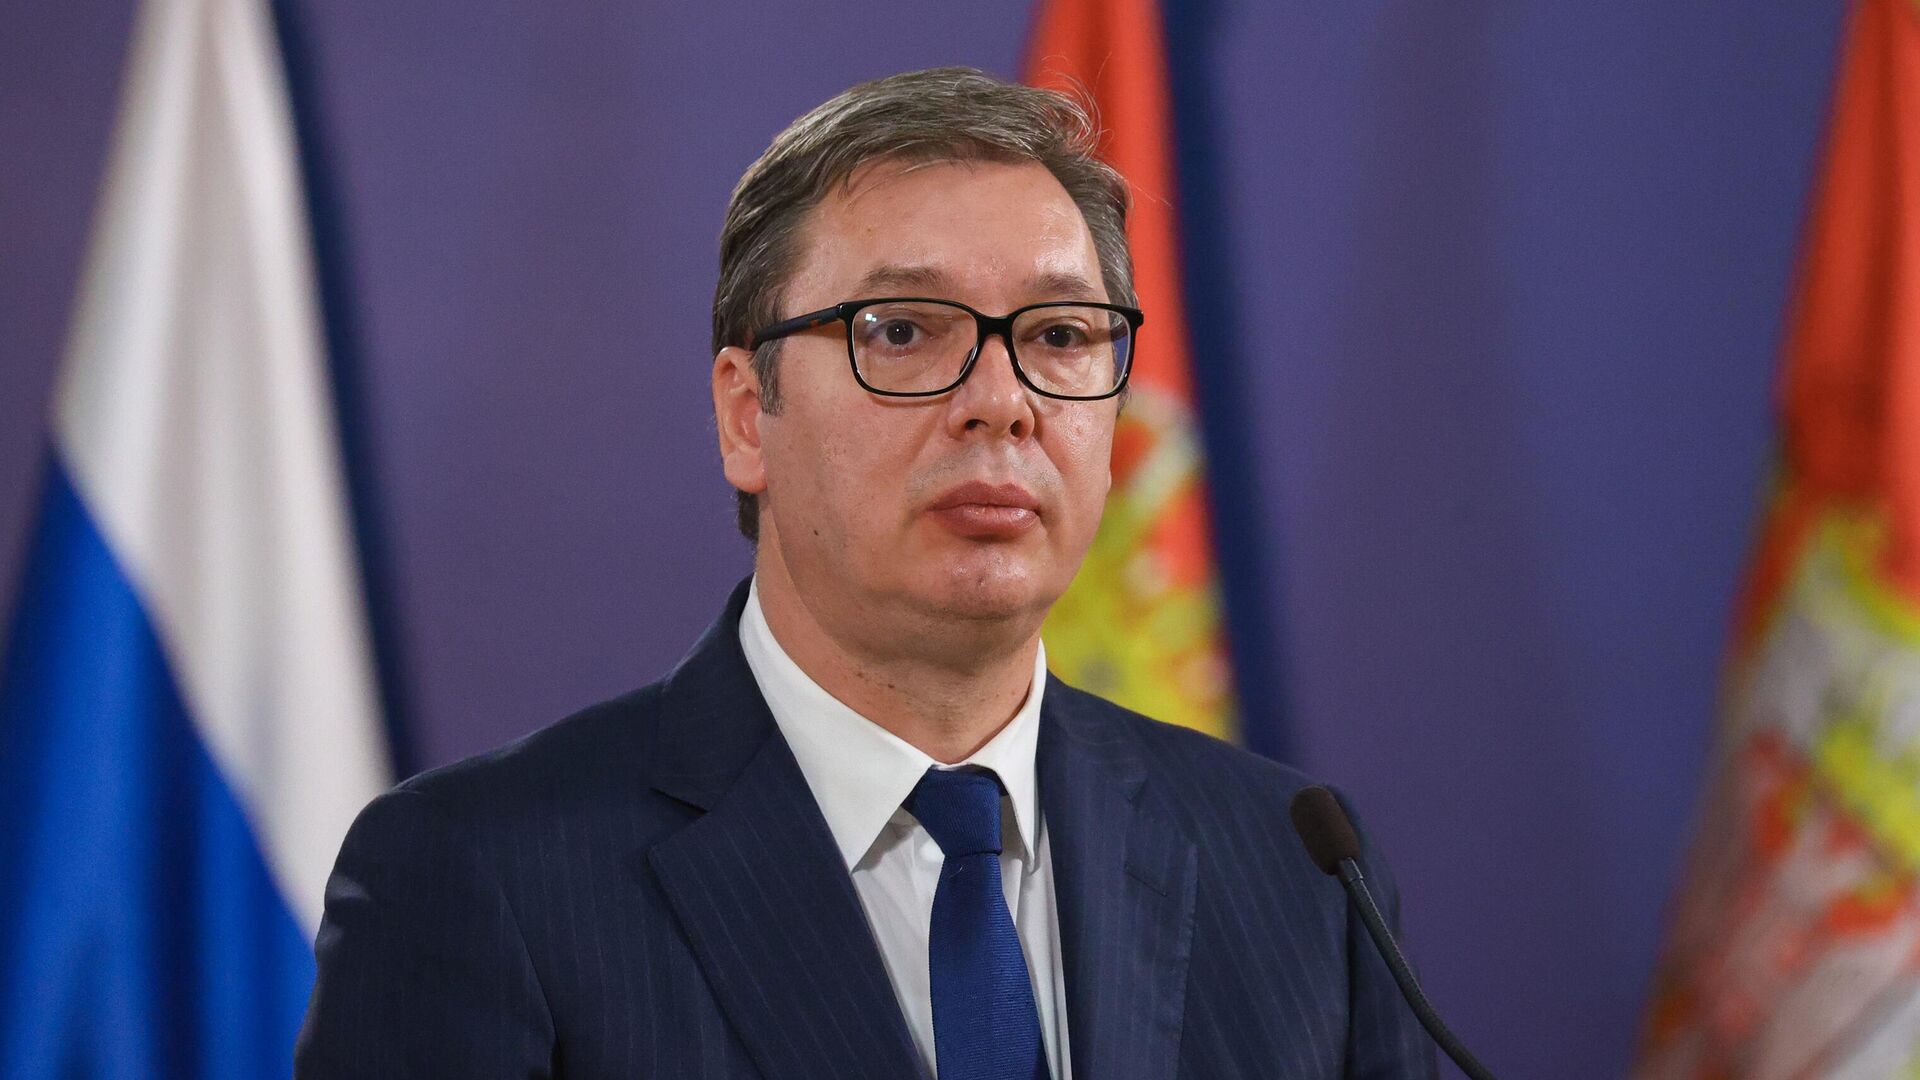 Serbia nesër me mbledhje të jashtëzakonshme të qeverisë, Vuçiq shqyrton plan reagimi ndaj presionit për Kosovën